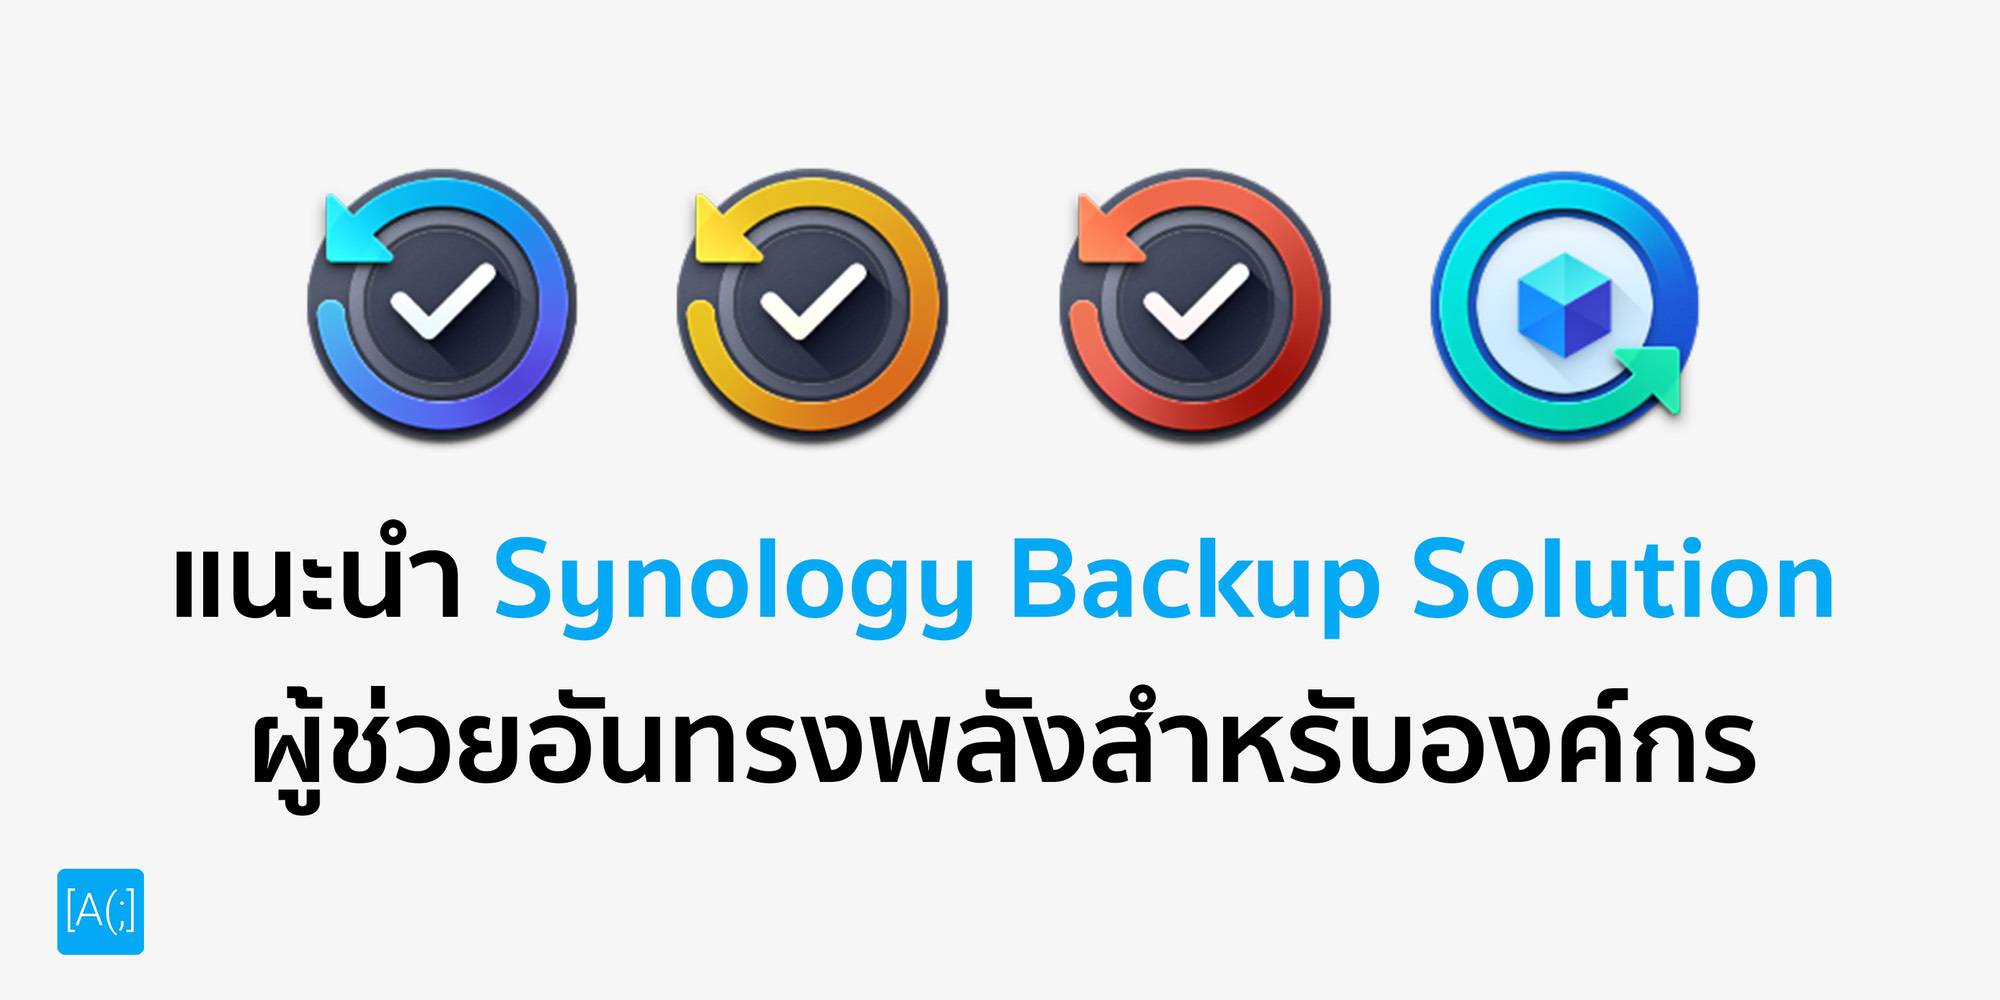 แนะนำ Synology Backup Solution ผู้ช่วยอันทรงพลังสำหรับองค์กร